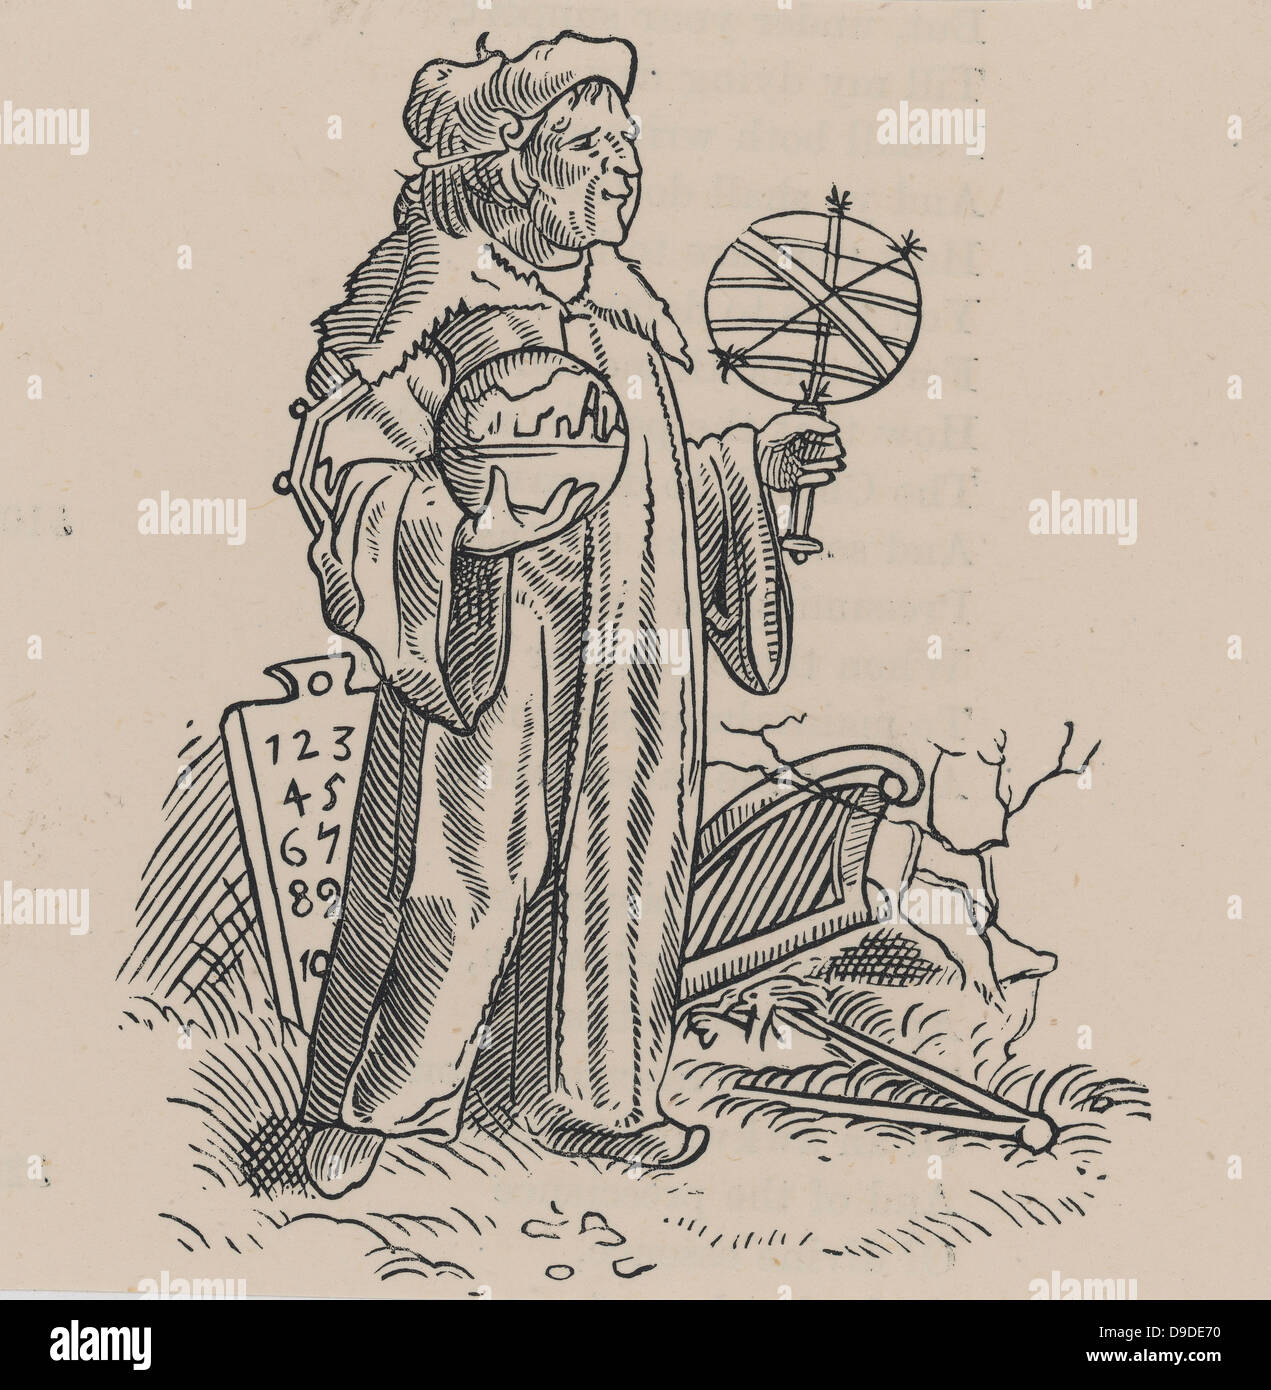 Holzschnitt von einem sechzehnten Jahrhundert Astrologe/Astronom und seine Instrumente. Sechzehnten Jahrhundert Holzschnitt. Stockfoto